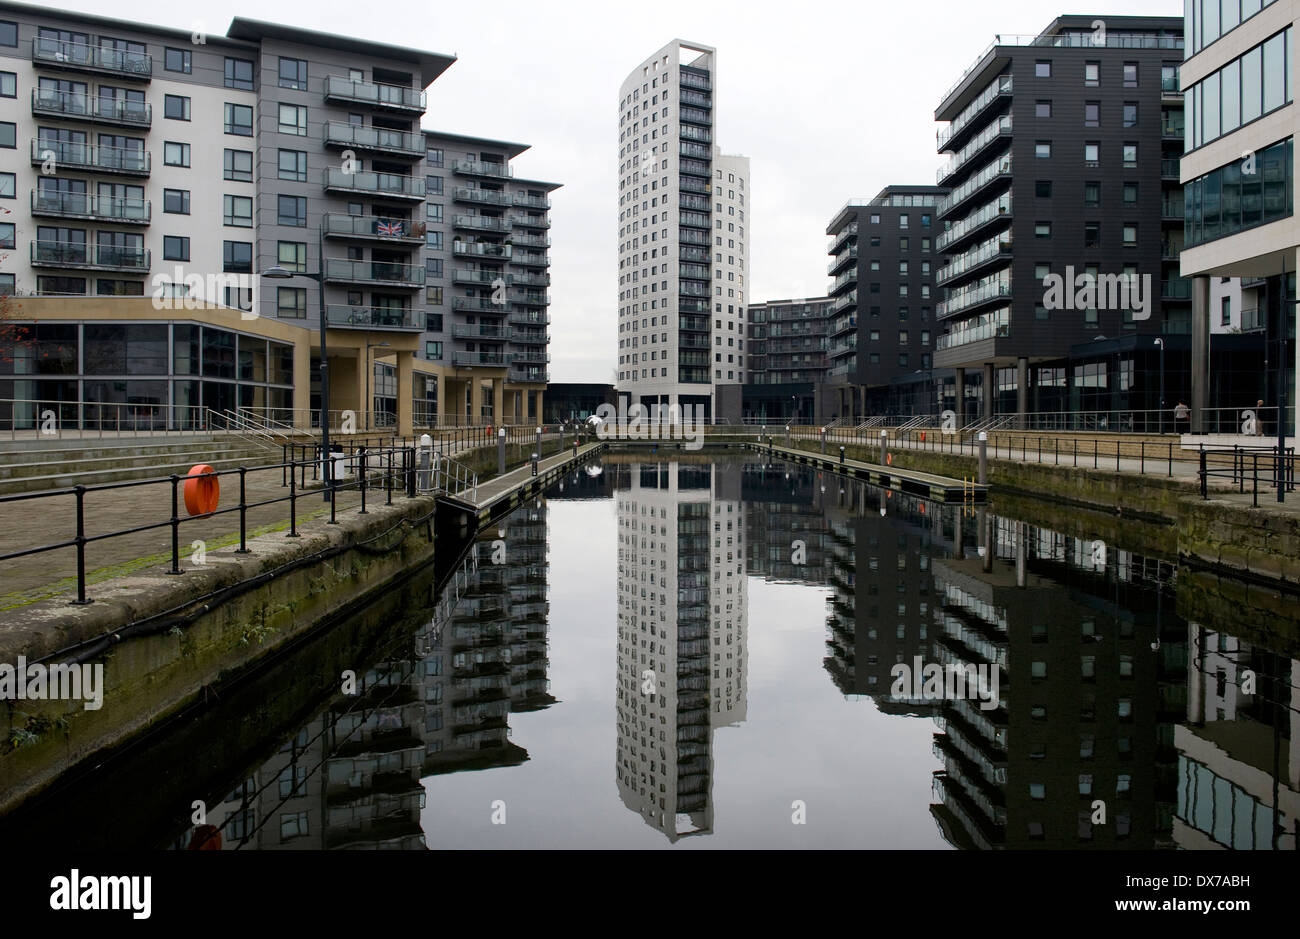 Nouveau Dock (anciennement Clarence Dock) est un développement mixte avec détail, bureaux et présence de loisirs au centre de Leeds, UK Banque D'Images